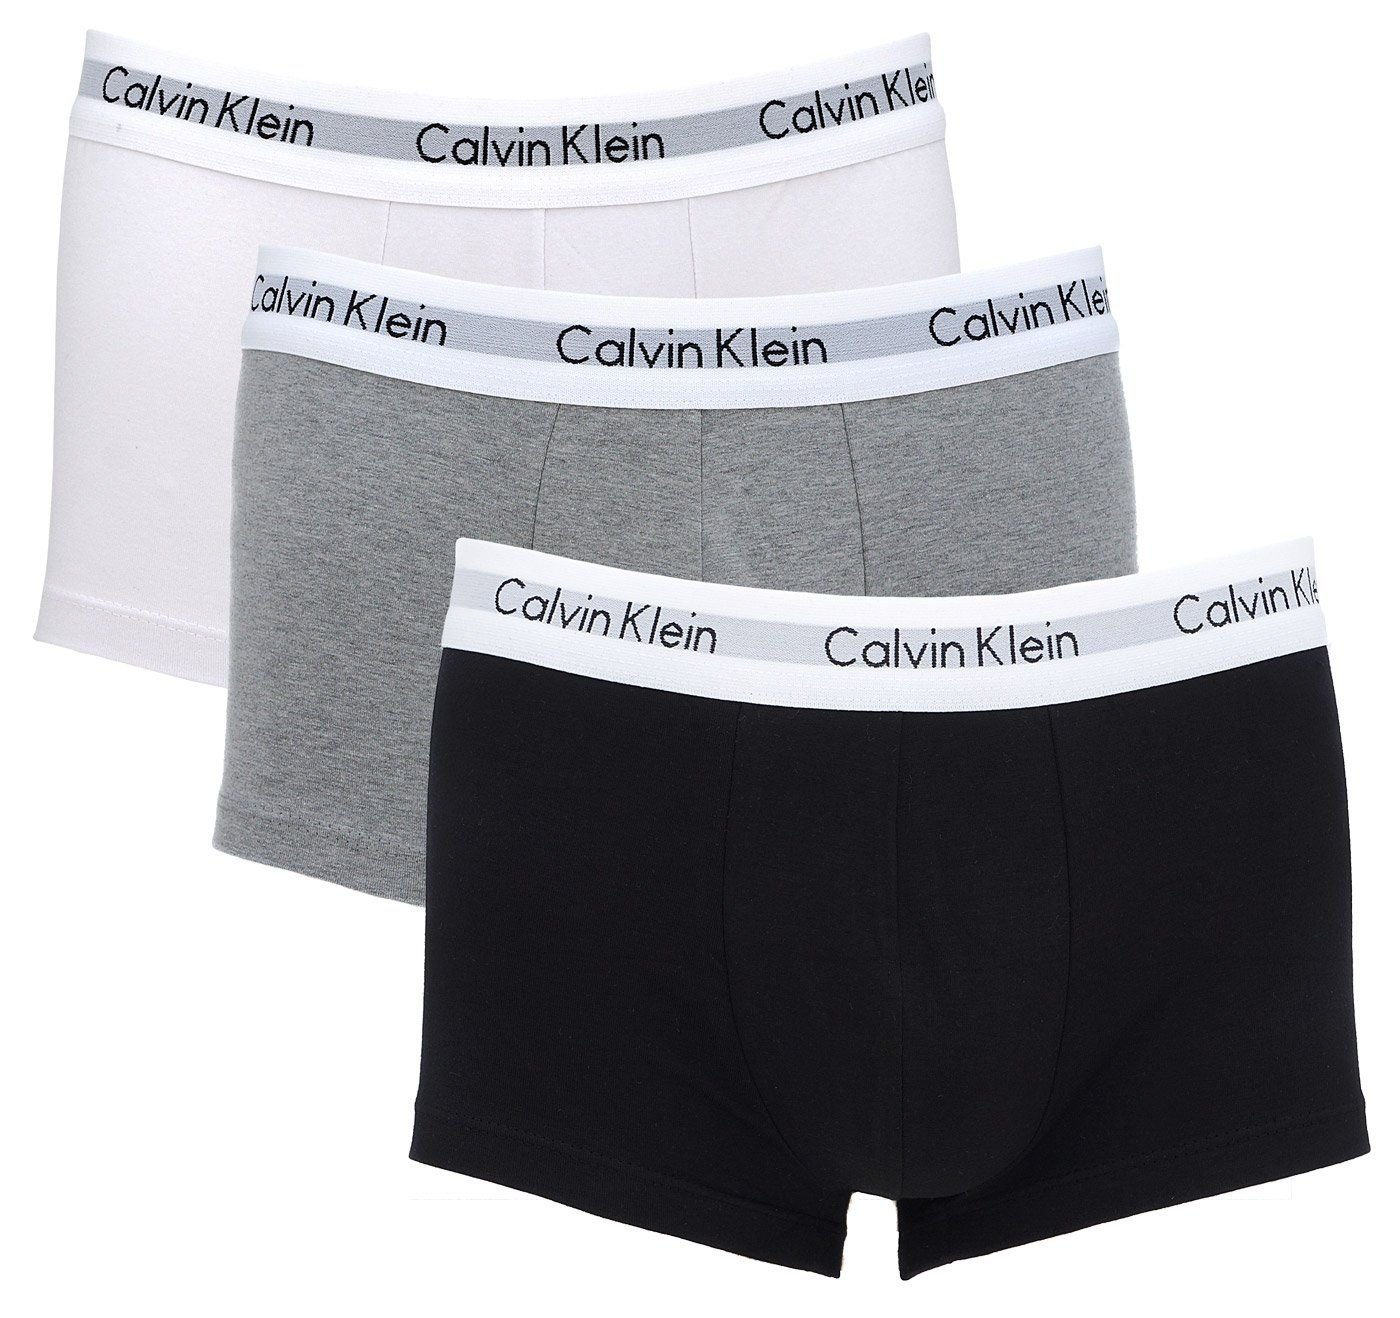 Kit 3  Cuecas Trunk Calvin Klein Cotton Branca/Preta/Cinza